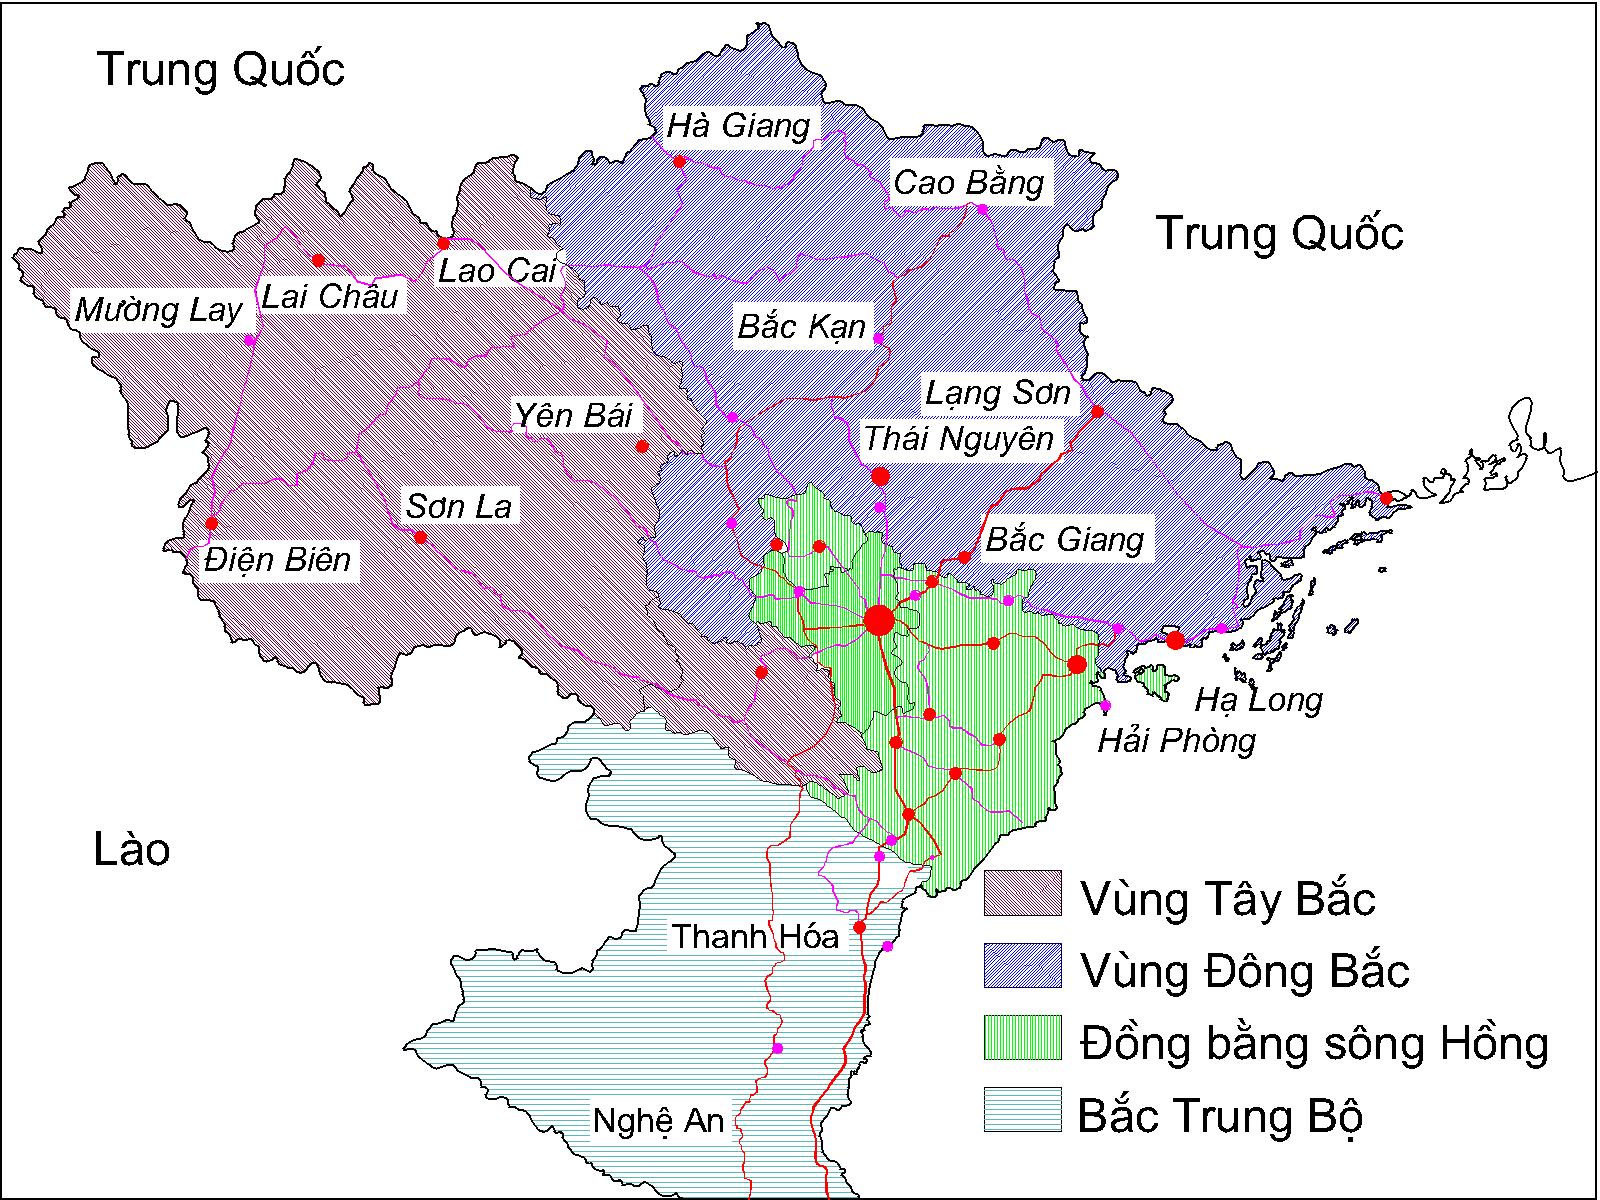 Bản đồ miền Bắc Việt Nam chia theo vị trí địa lý